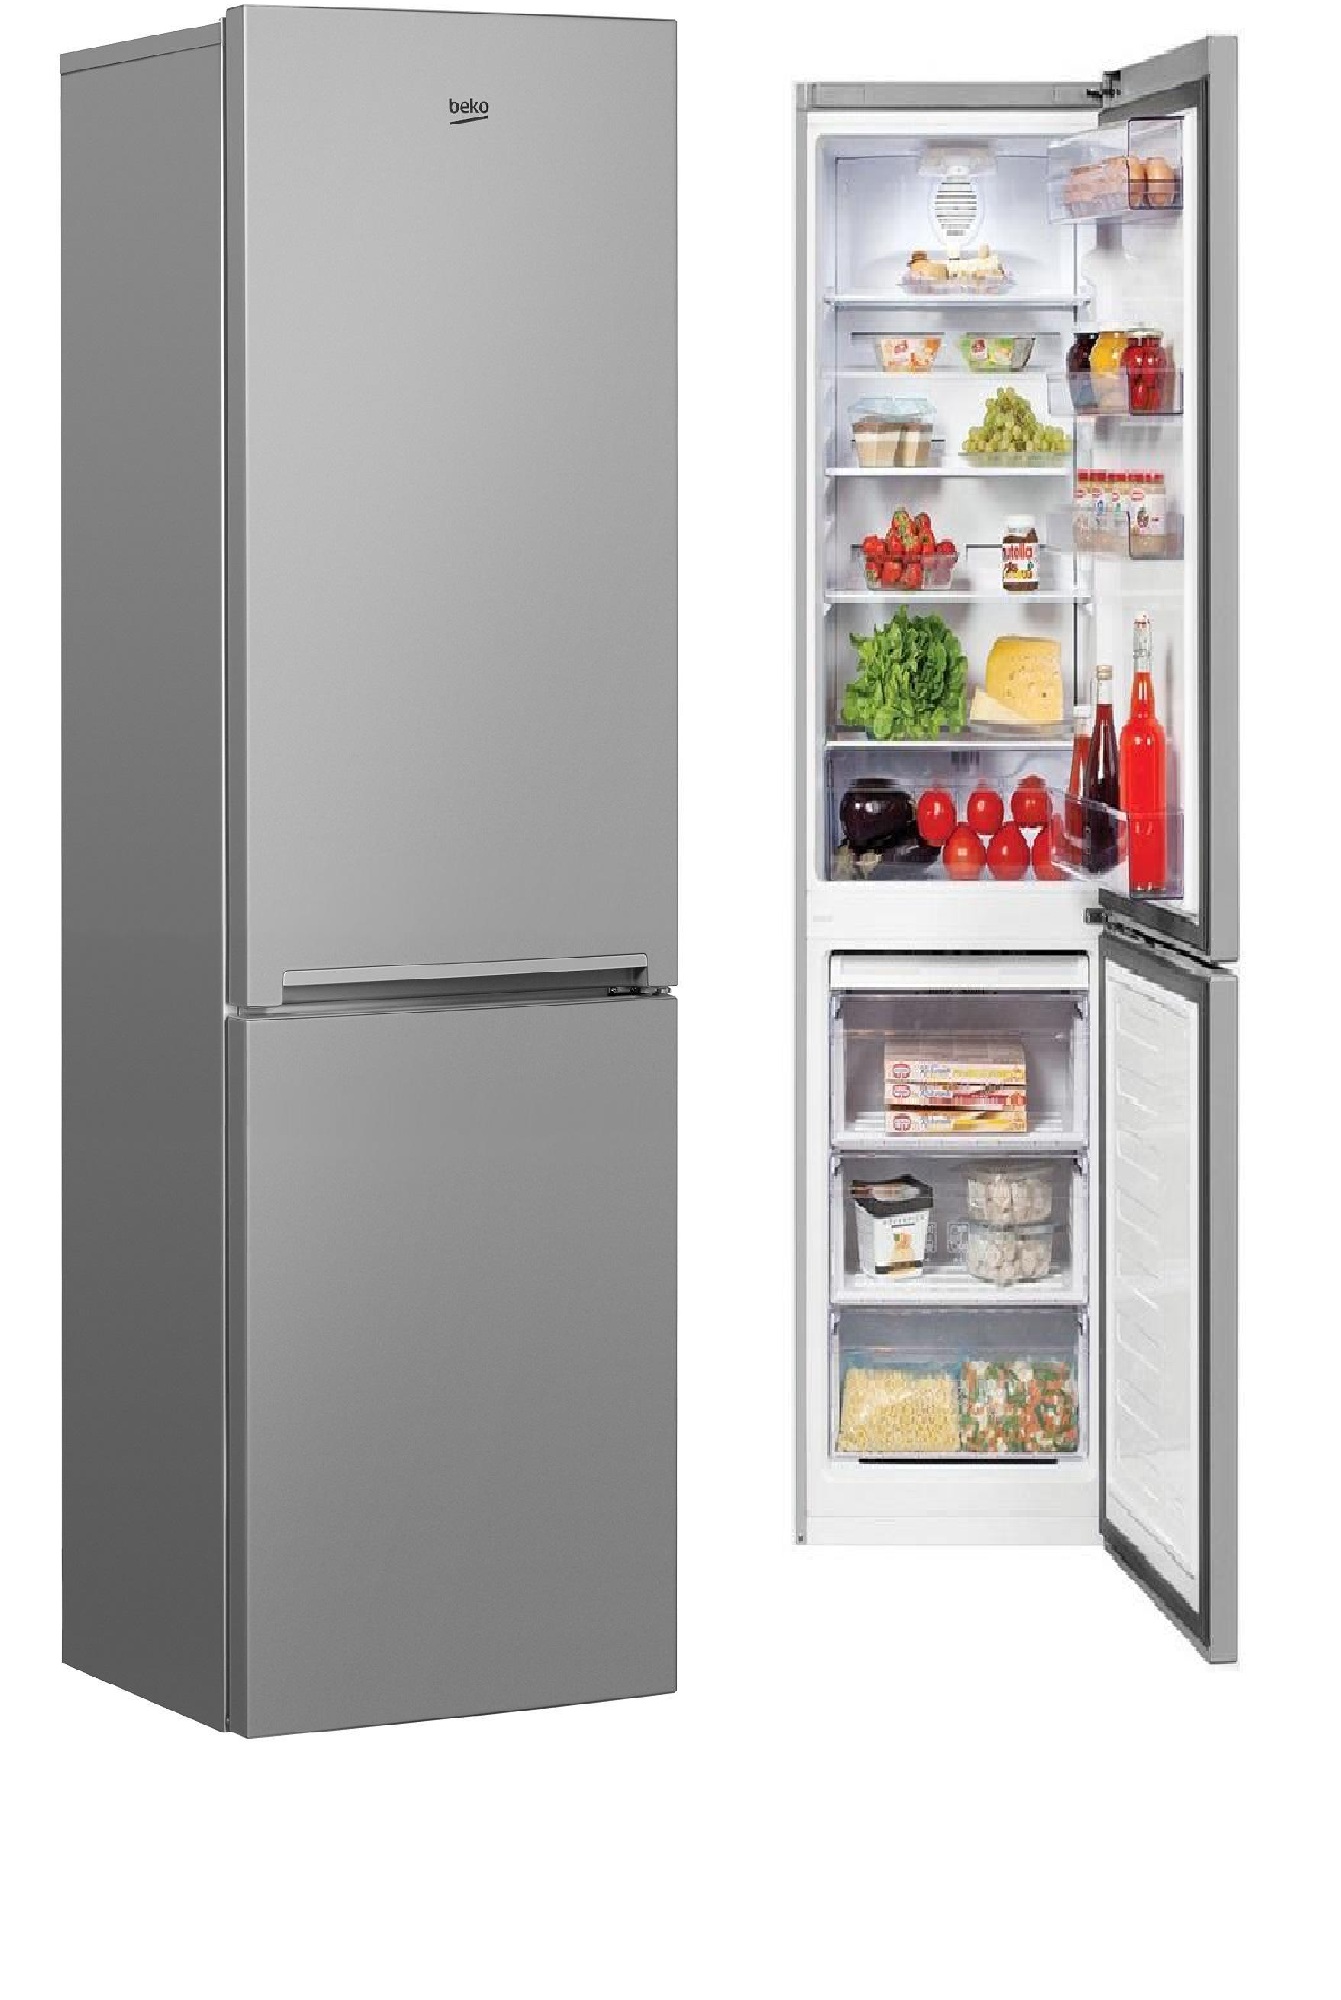 холодильник beko rcnk355k00s, купить в Красноярске холодильник beko rcnk355k00s,  купить в Красноярске дешево холодильник beko rcnk355k00s, купить в Красноярске минимальной цене холодильник beko rcnk355k00s